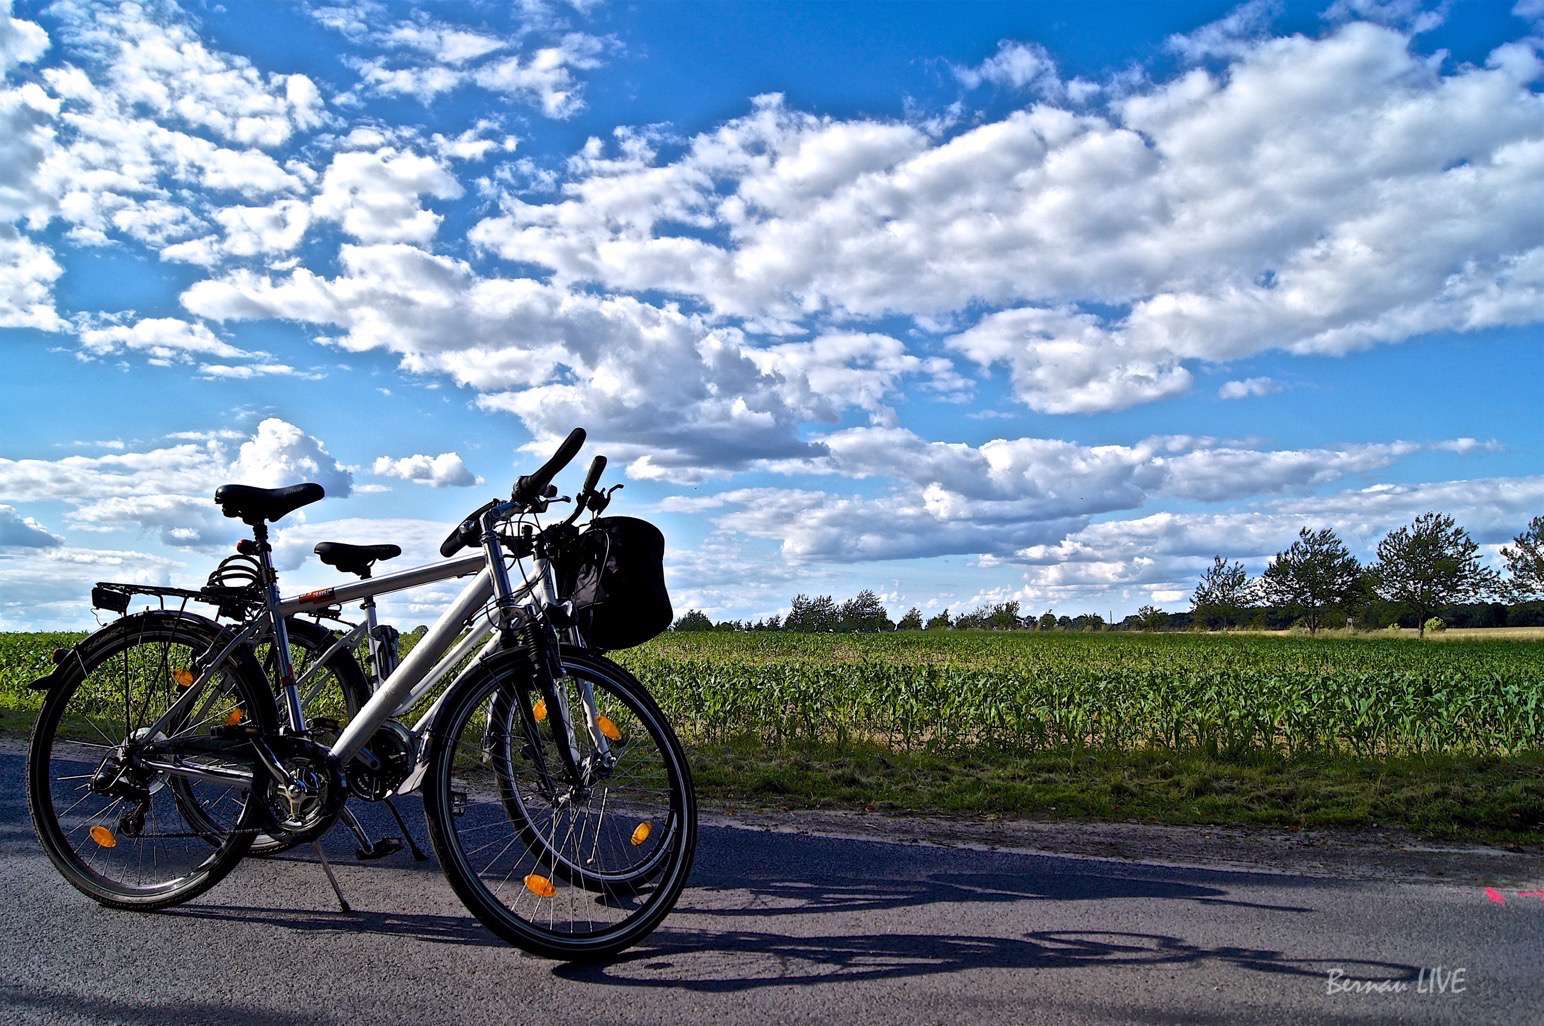 Bernau: Euch ein schönes Wochenende, vielleicht mit ner Fahrradtour?